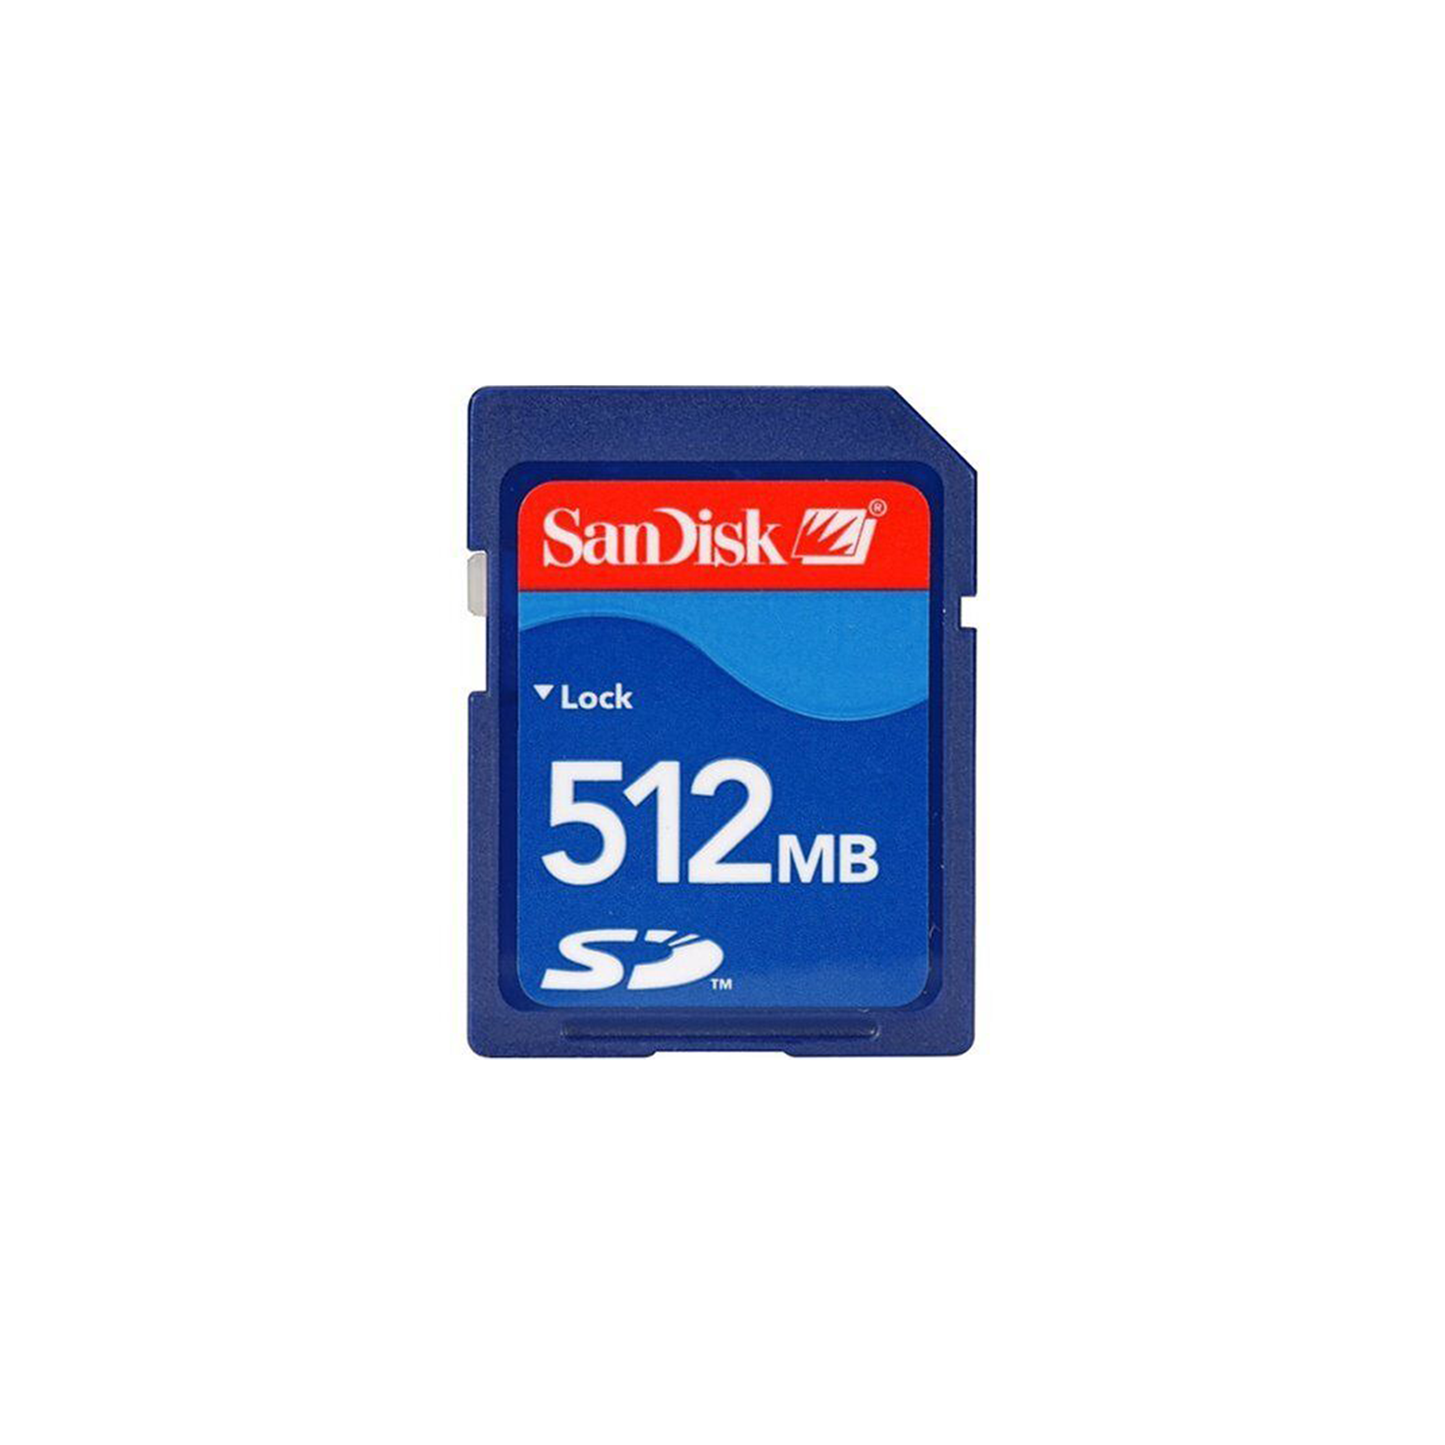 512MB Sandisk SD Card for Digicams